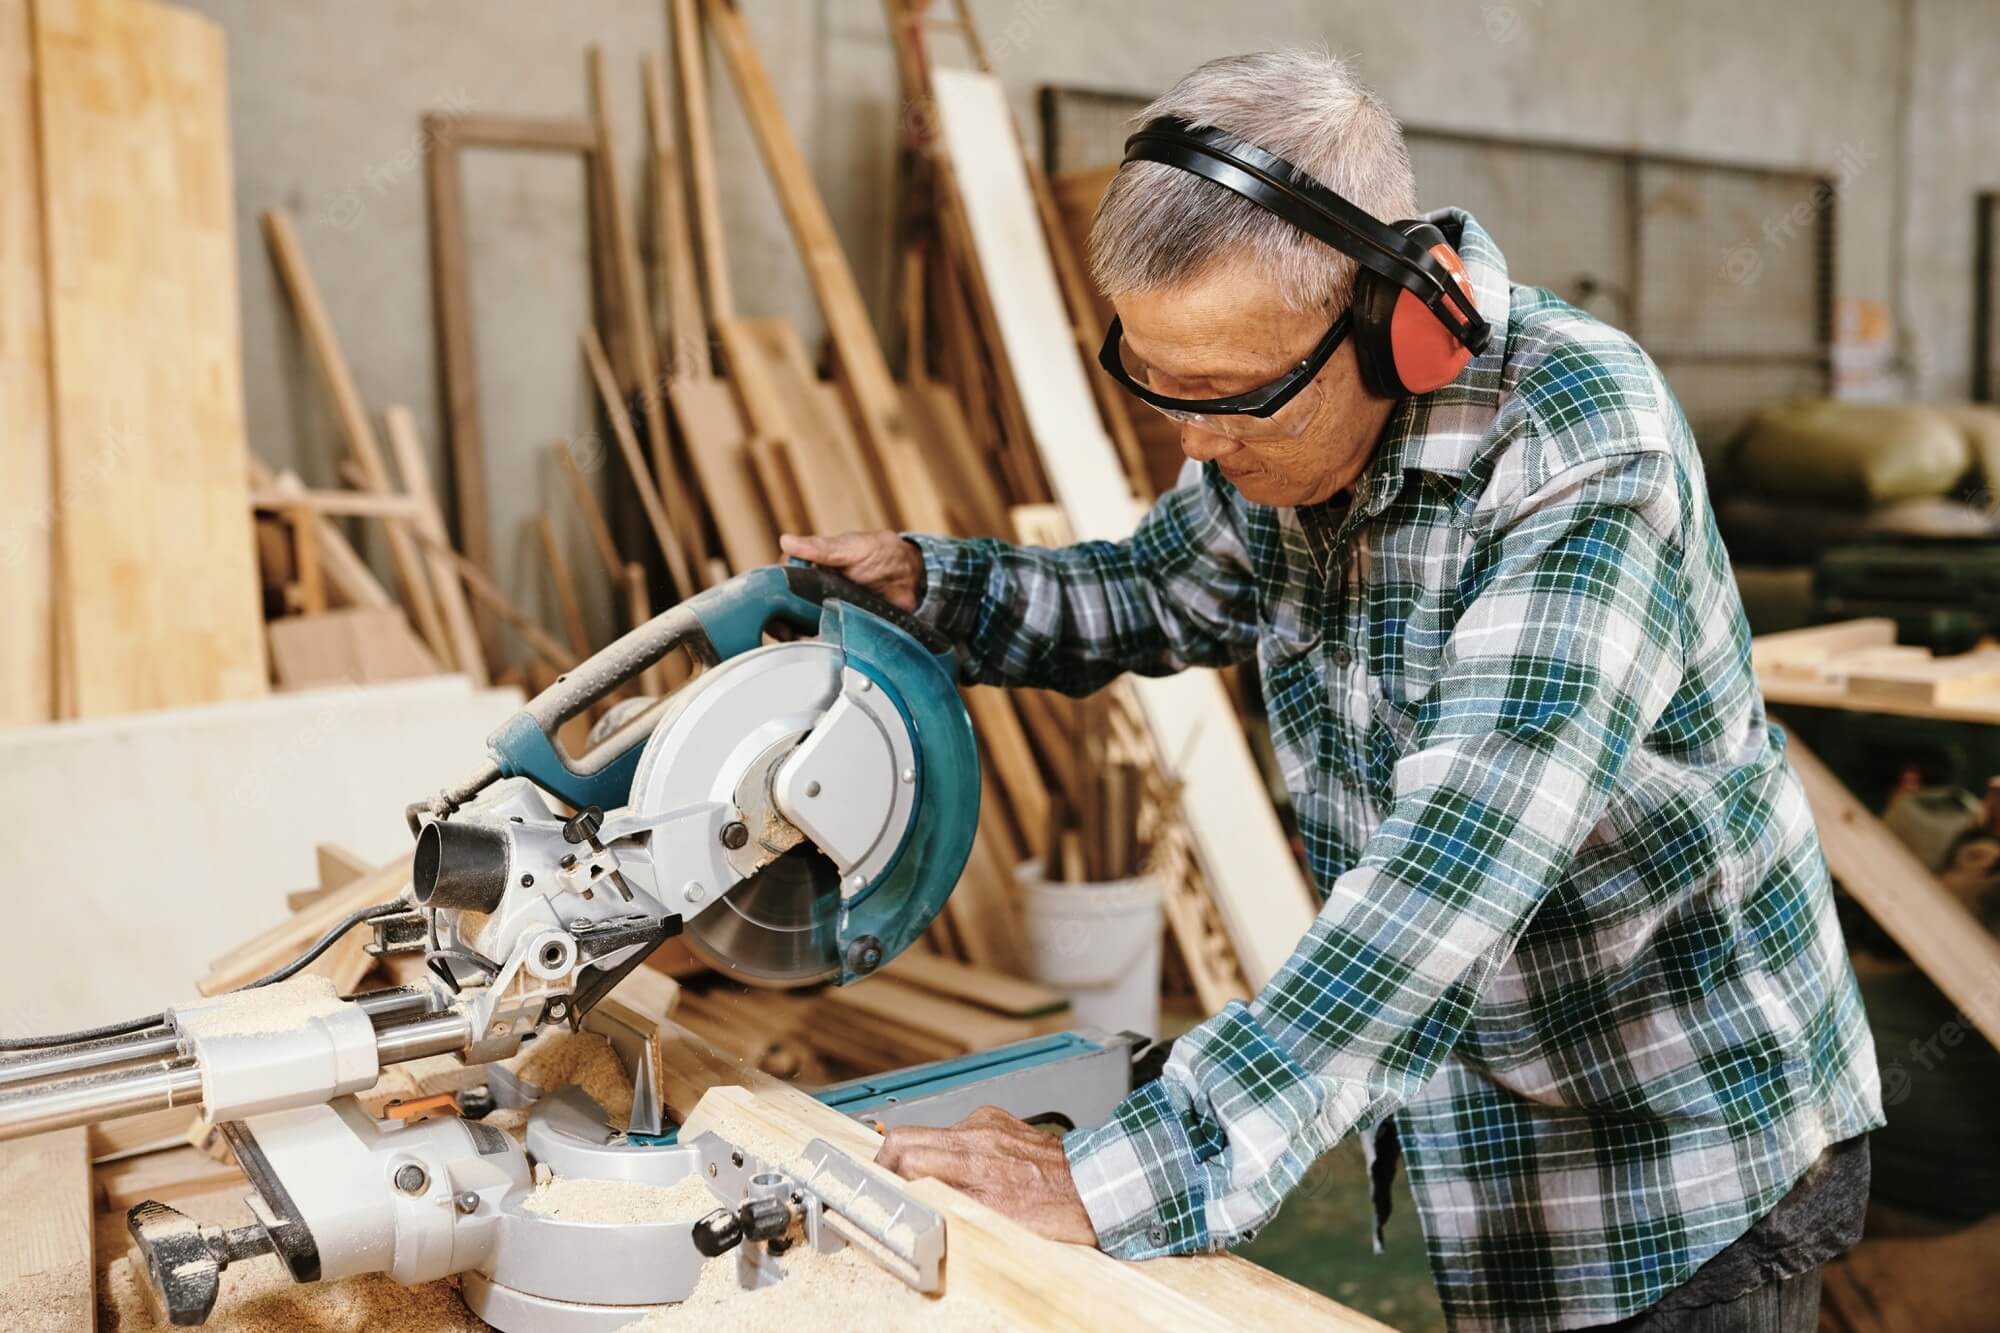 earmuffs-cutting-wood-plank-circular-saw-electric-tool safety